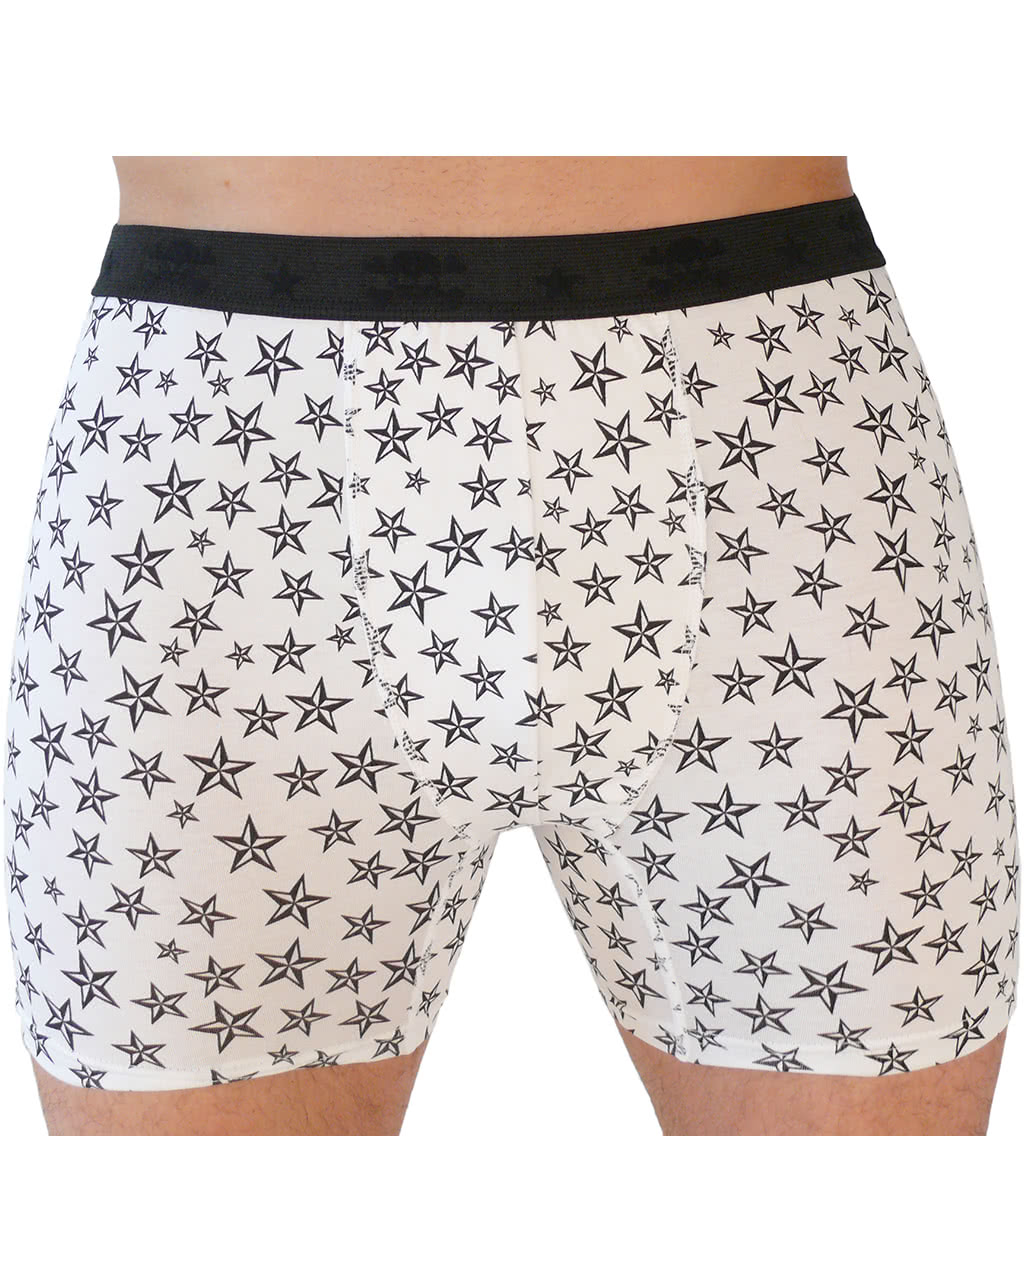 Boxershorts mit Nautischen Sternen ✯ Shorty M/L